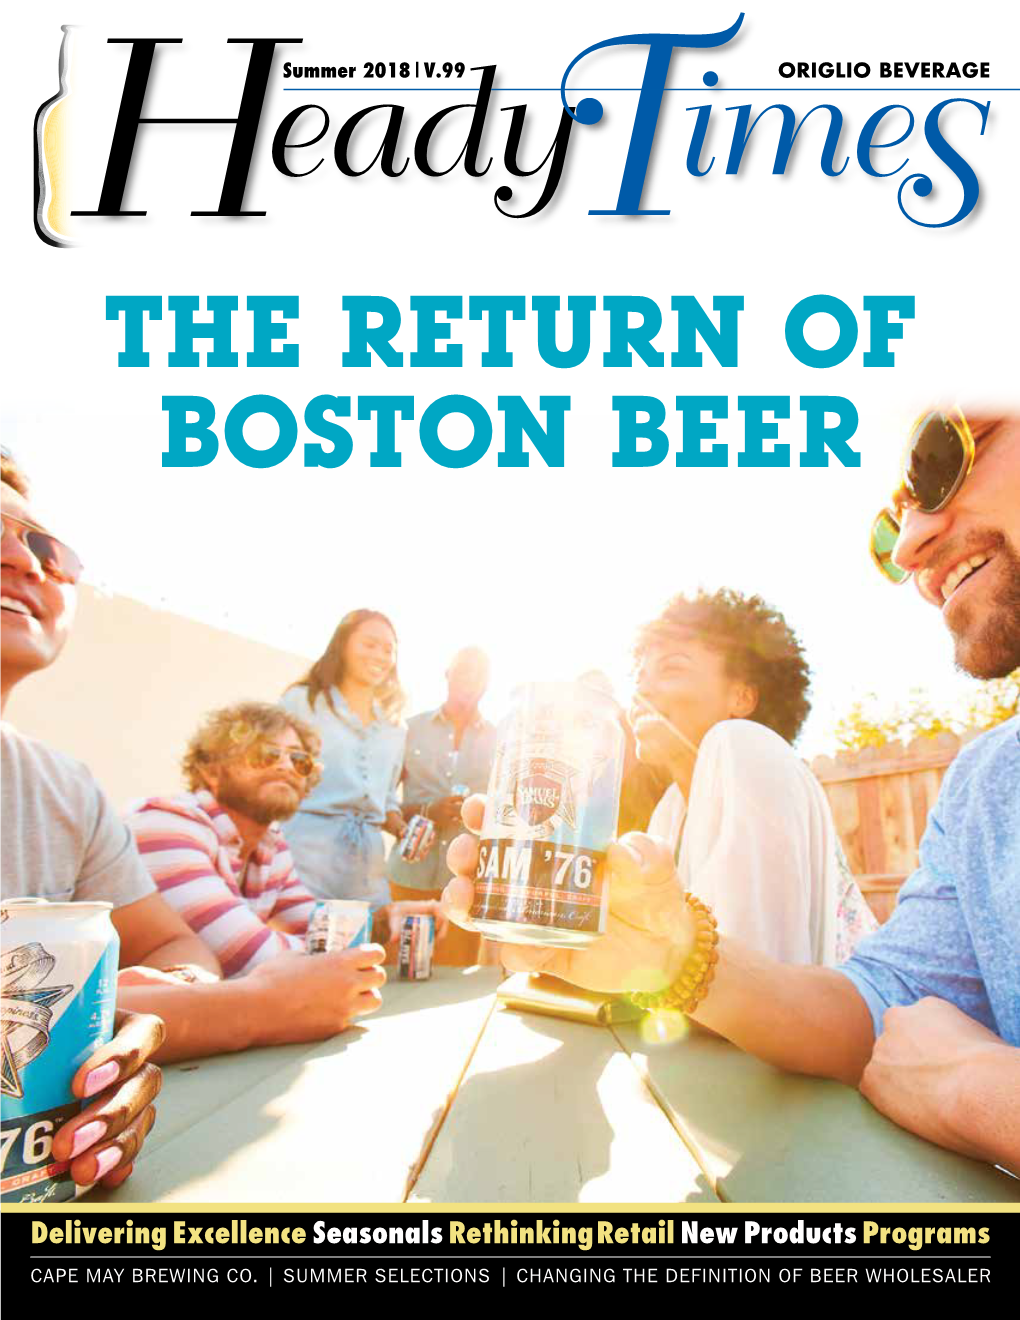 The Return of Boston Beer